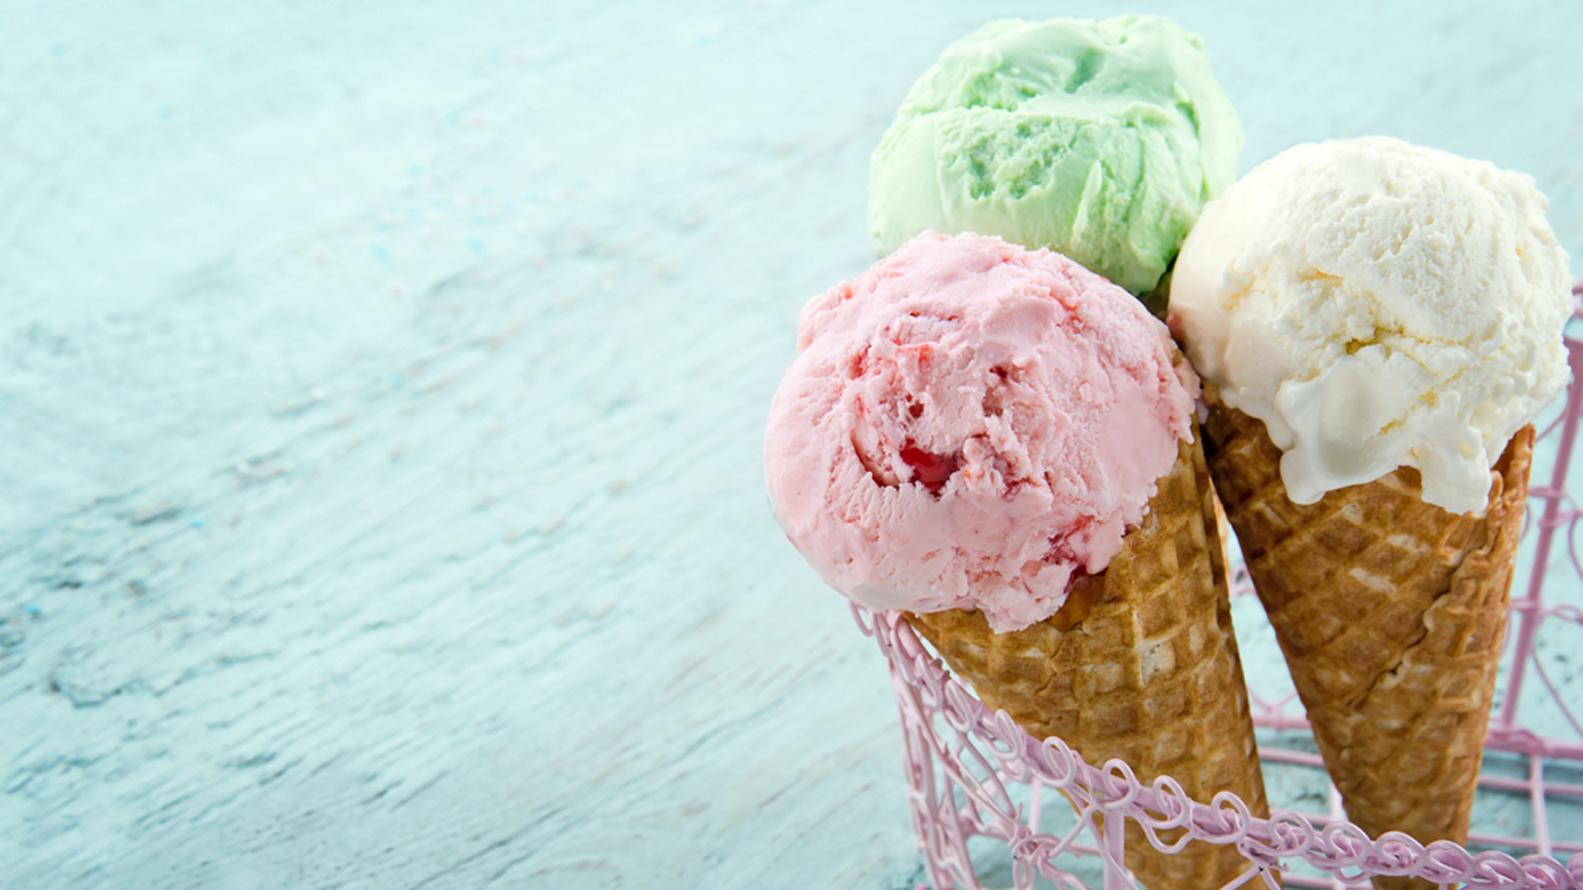 Postres de autor: cinco recetas dulces para hacer en casa con helado  artesanal - Infobae